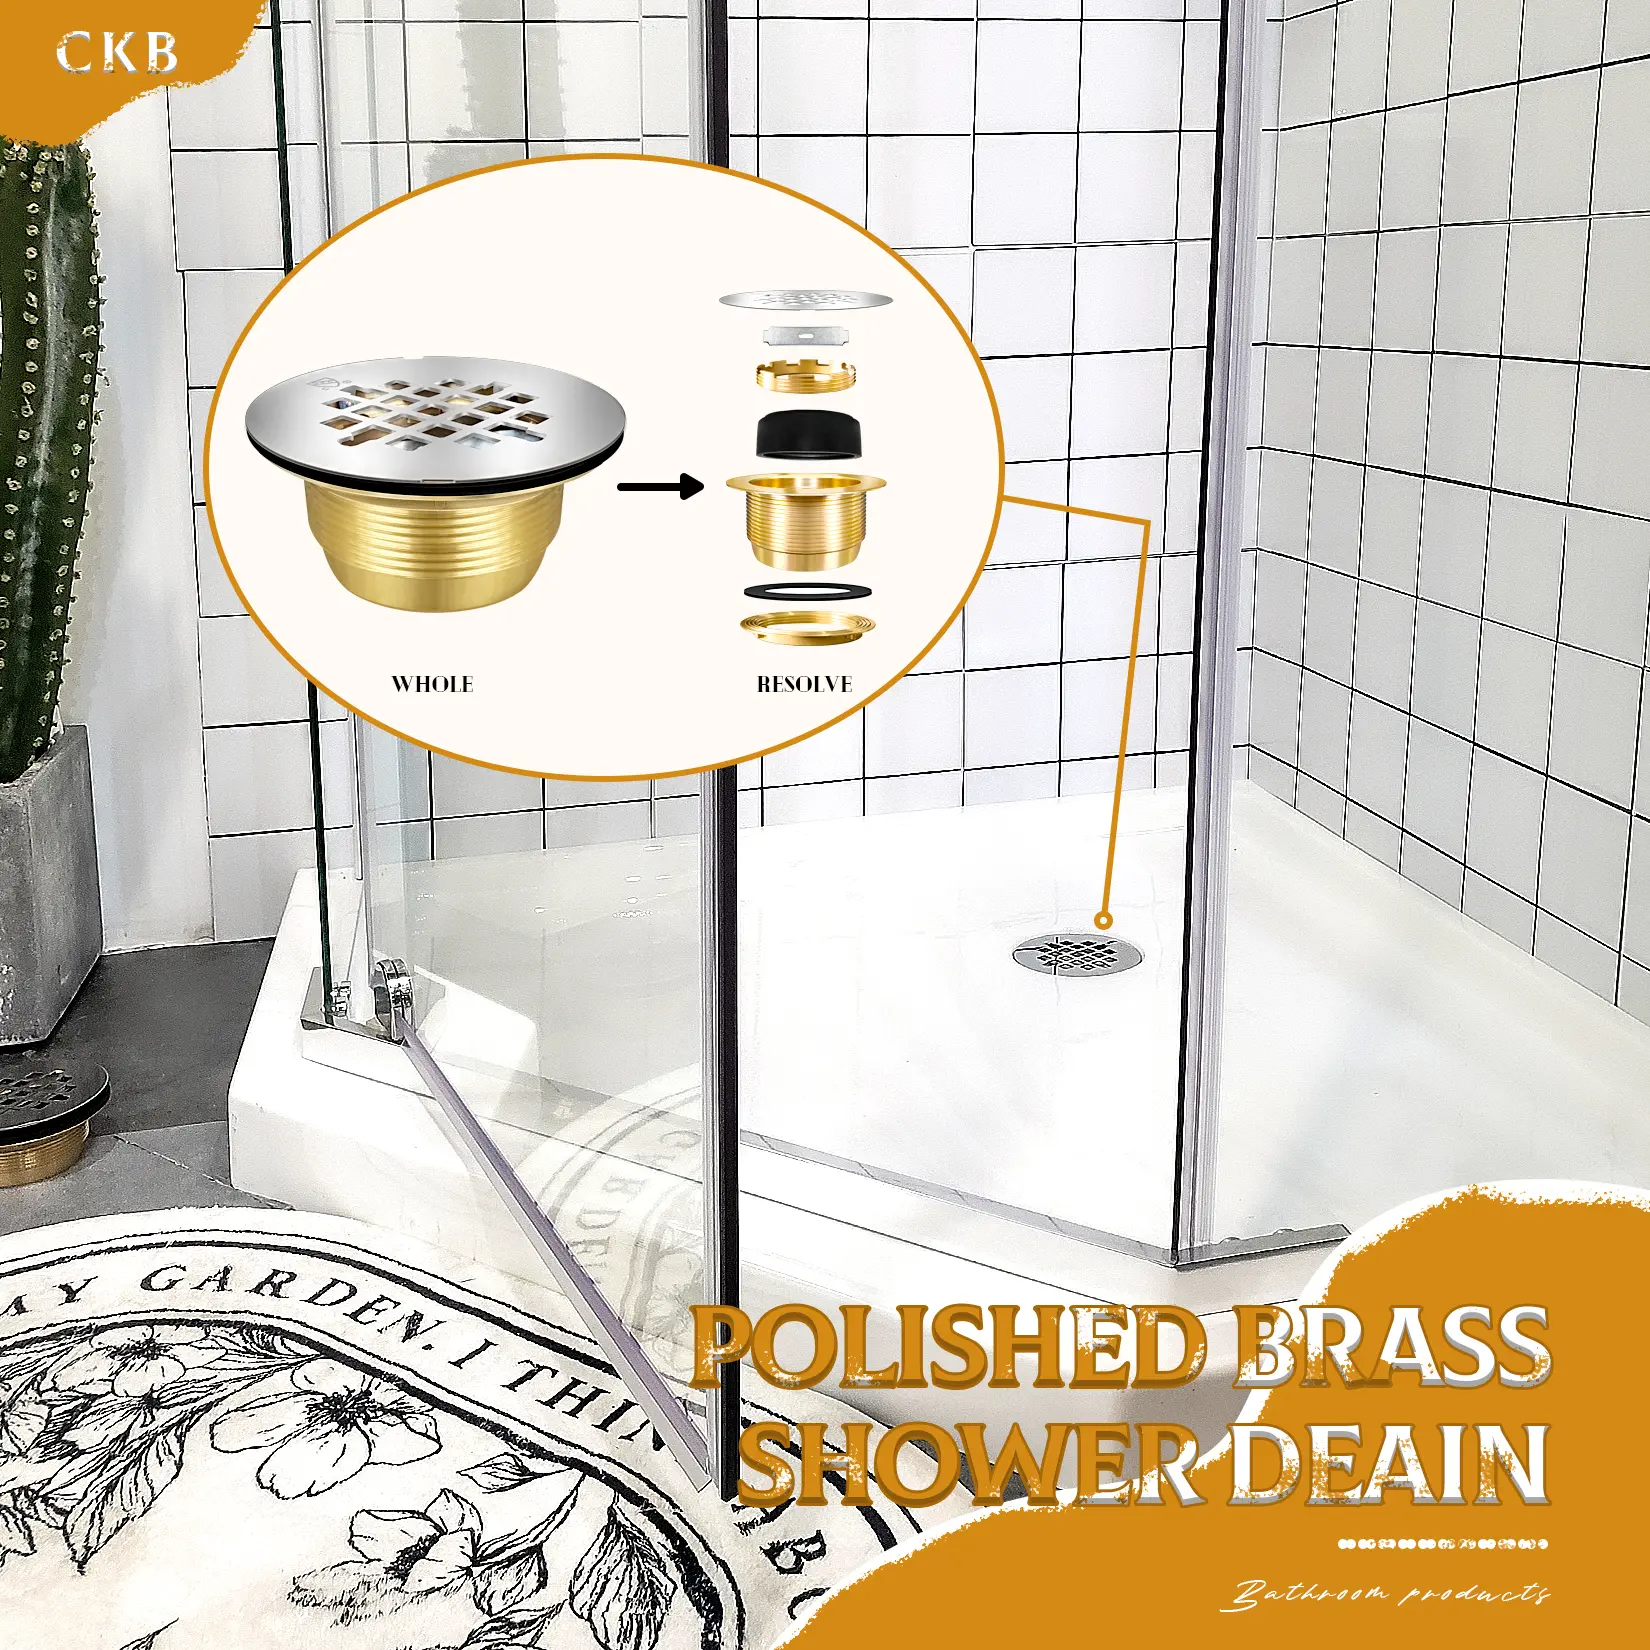 polished brass shower deain